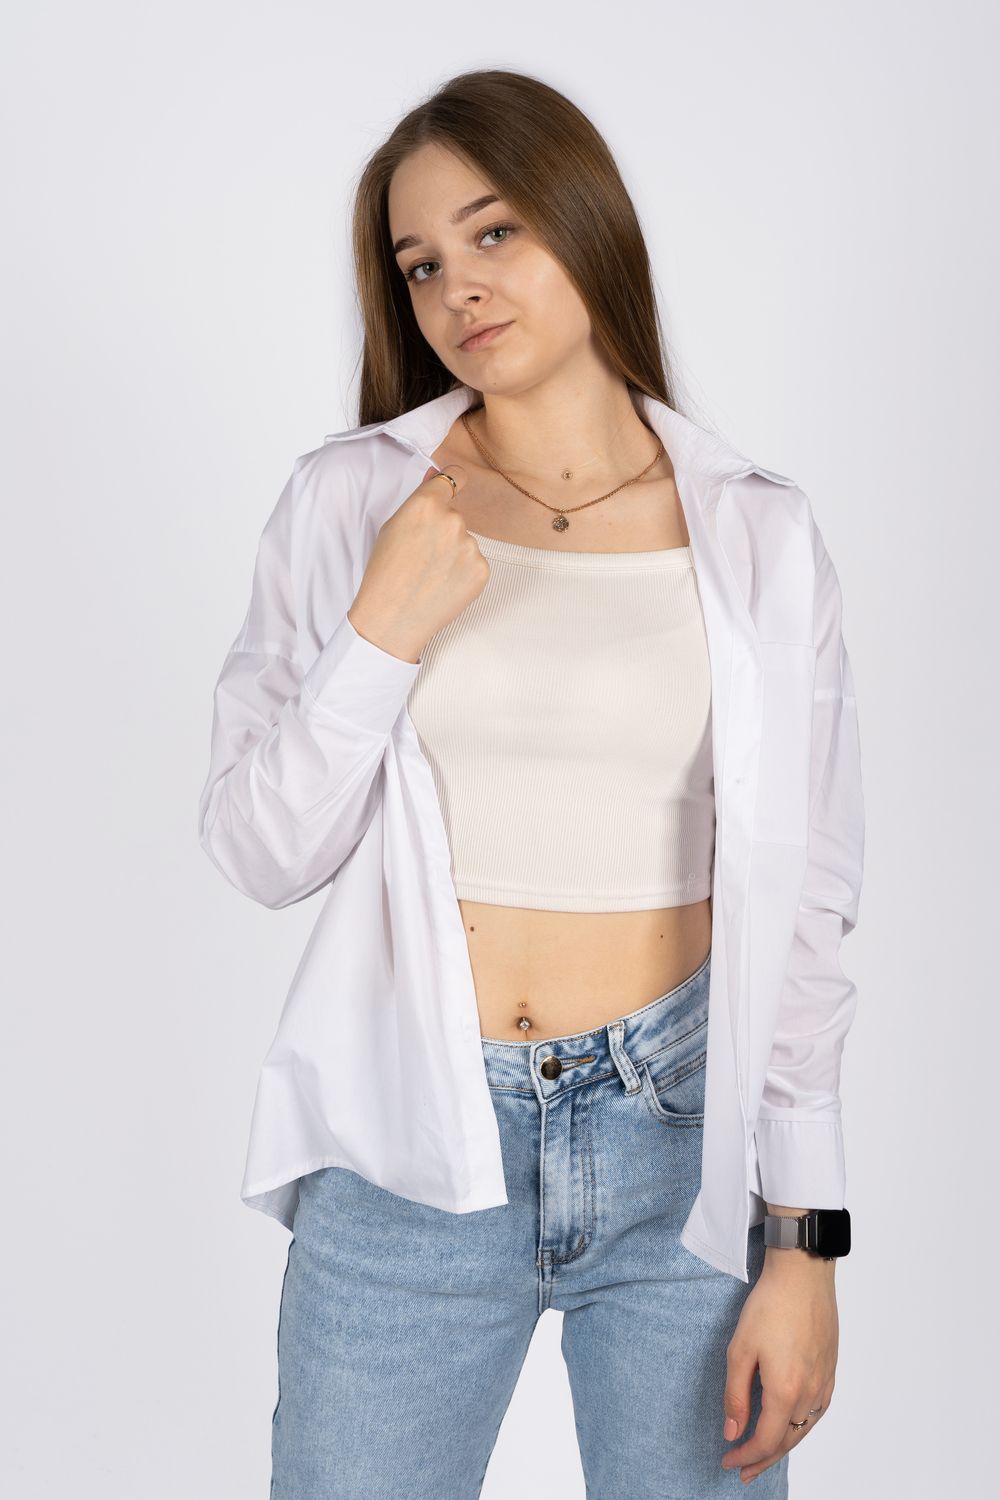 Джемпер (рубашка) женский 6359 - белый